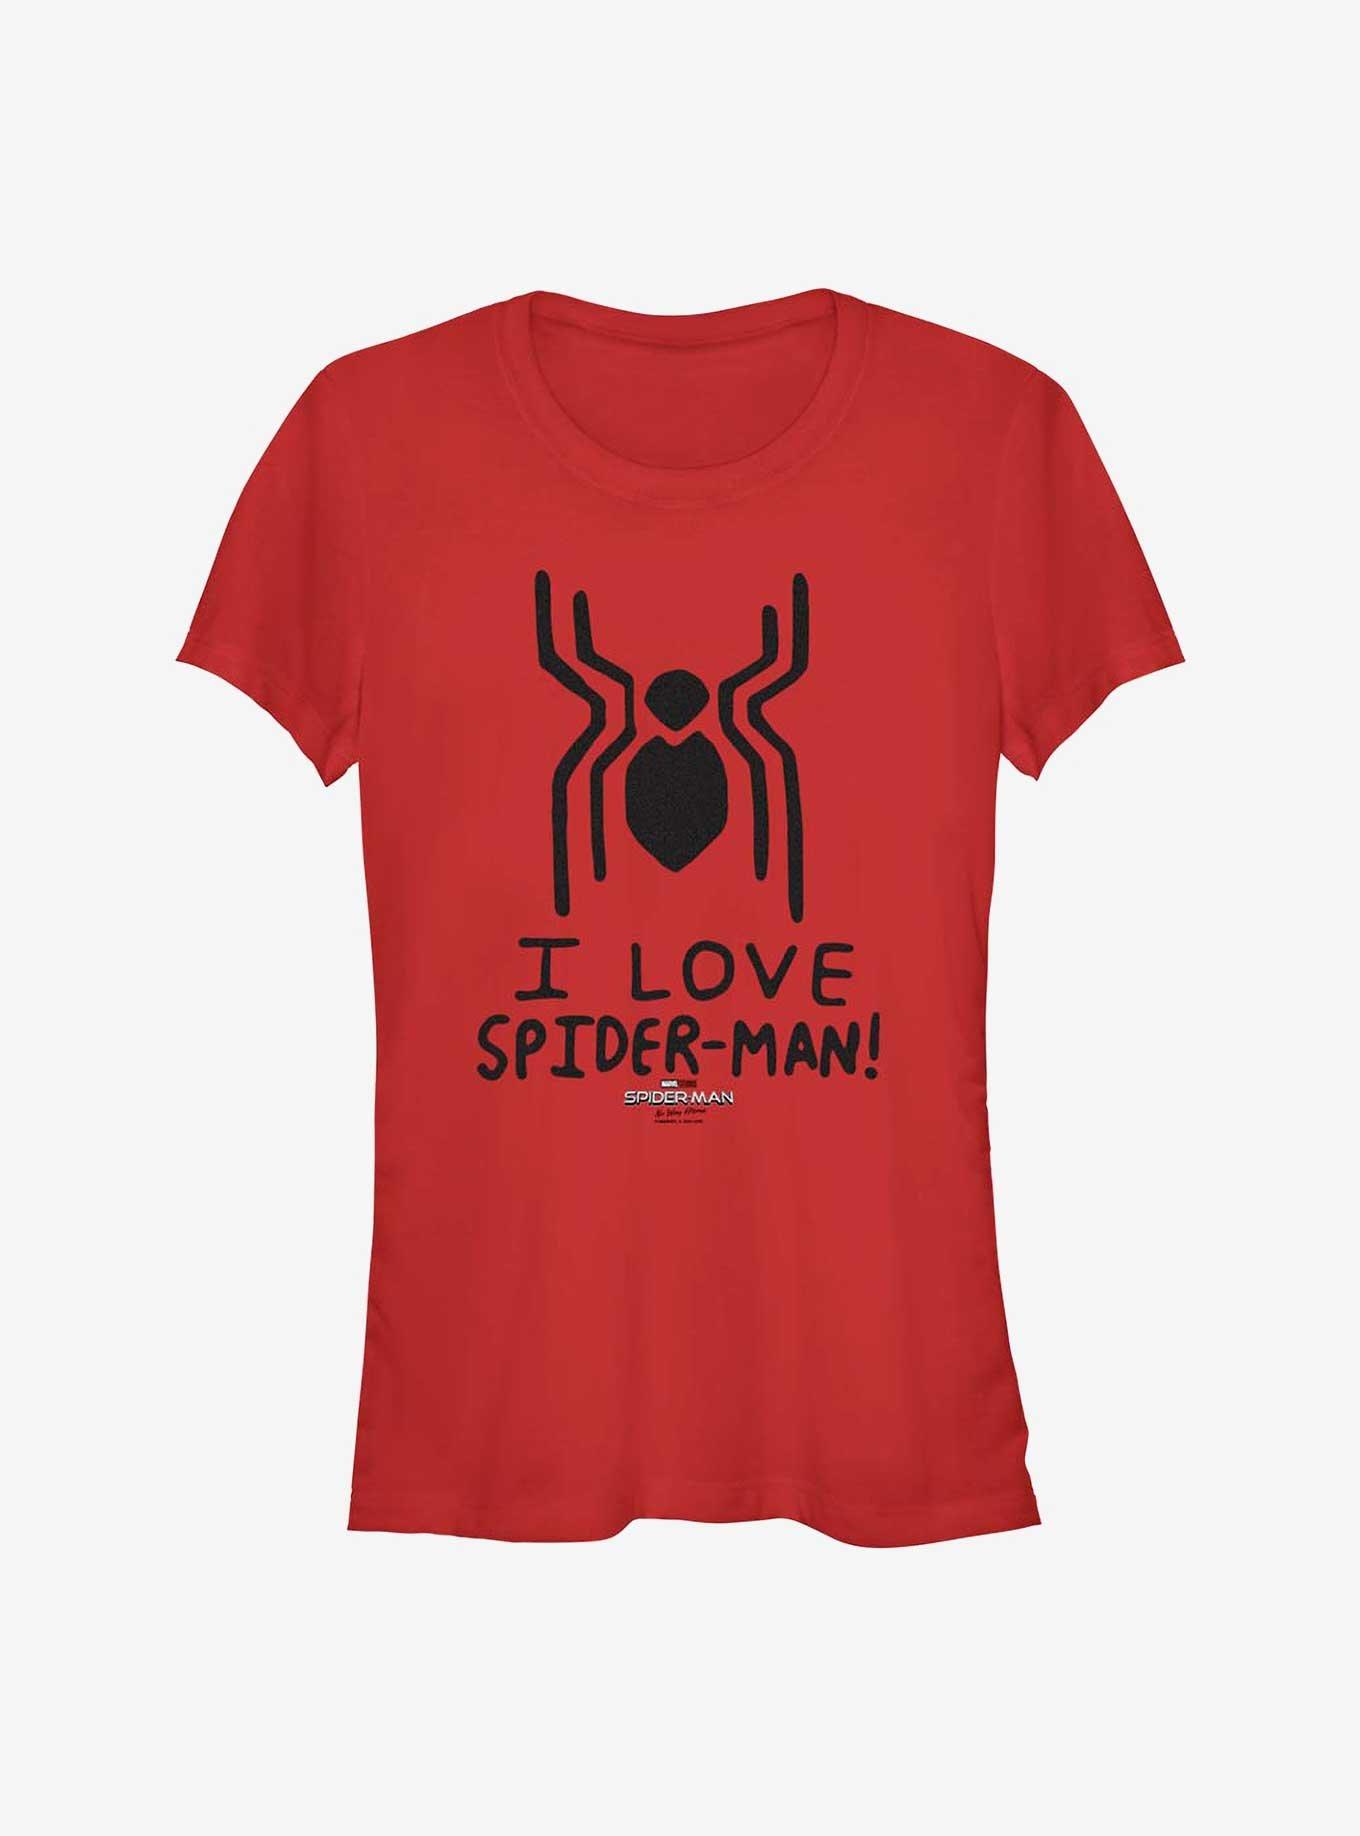 Marvel Spider-Man: No Way Home Spider Love Girls T-Shirt